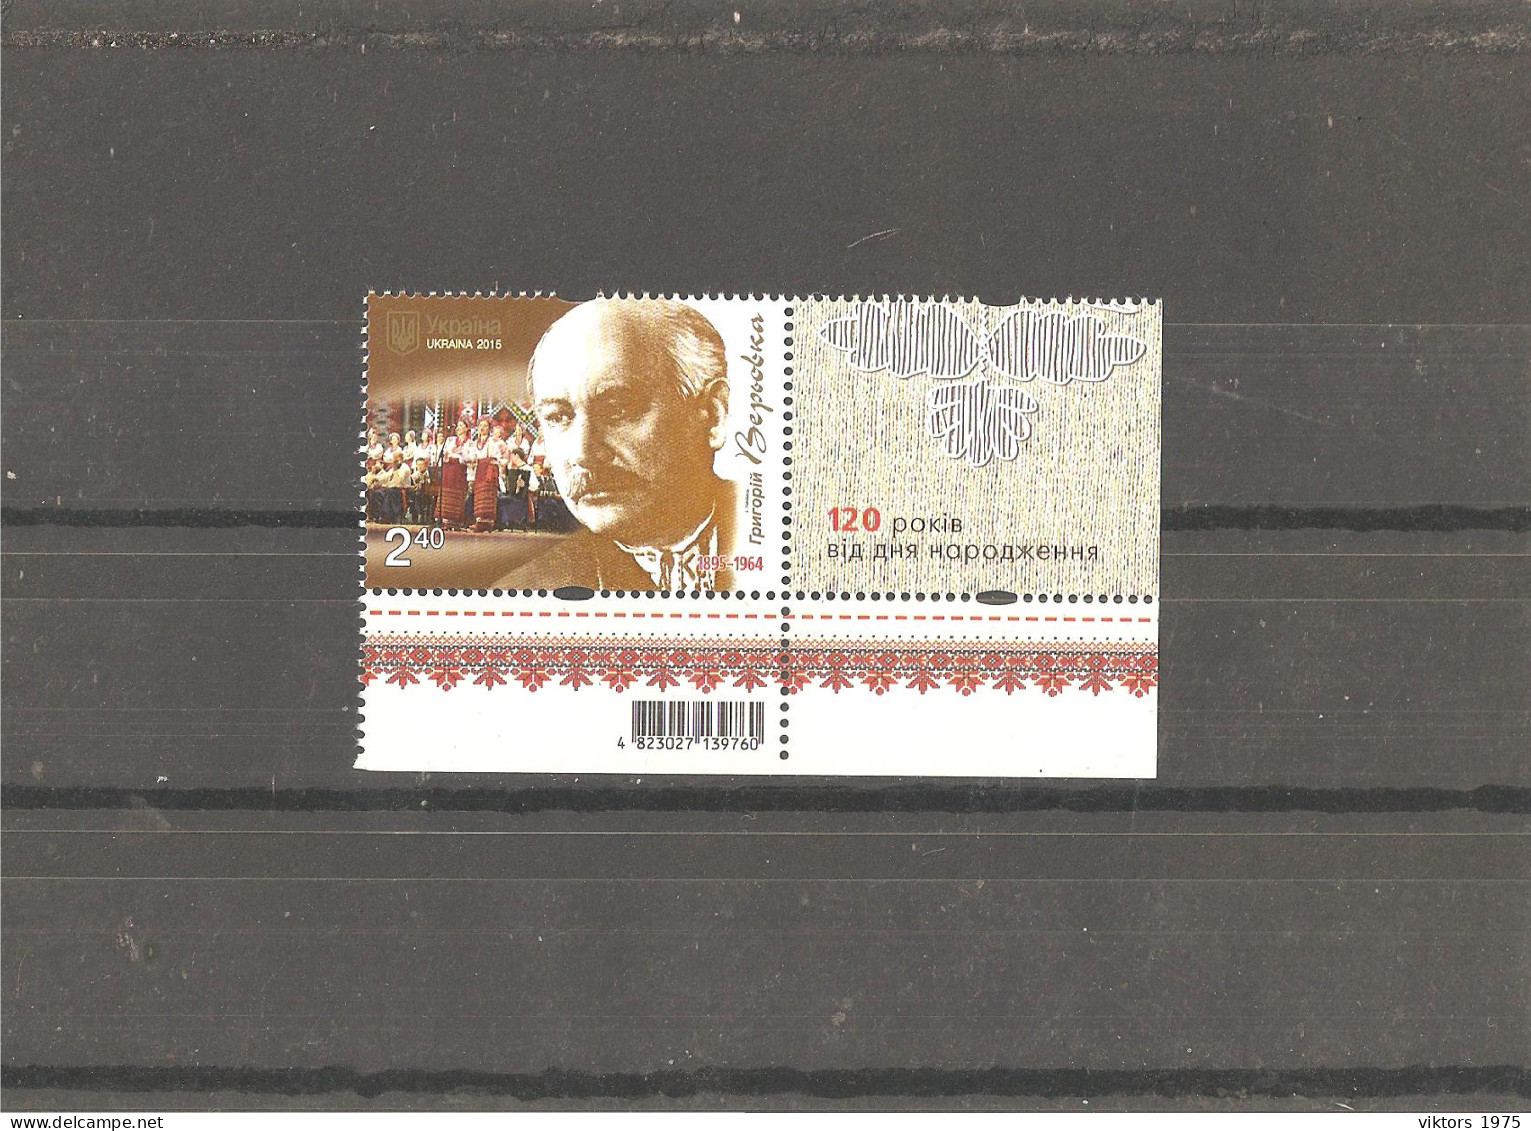 MNH Stamp Nr.1526 In MICHEL Catalog - Ukraine